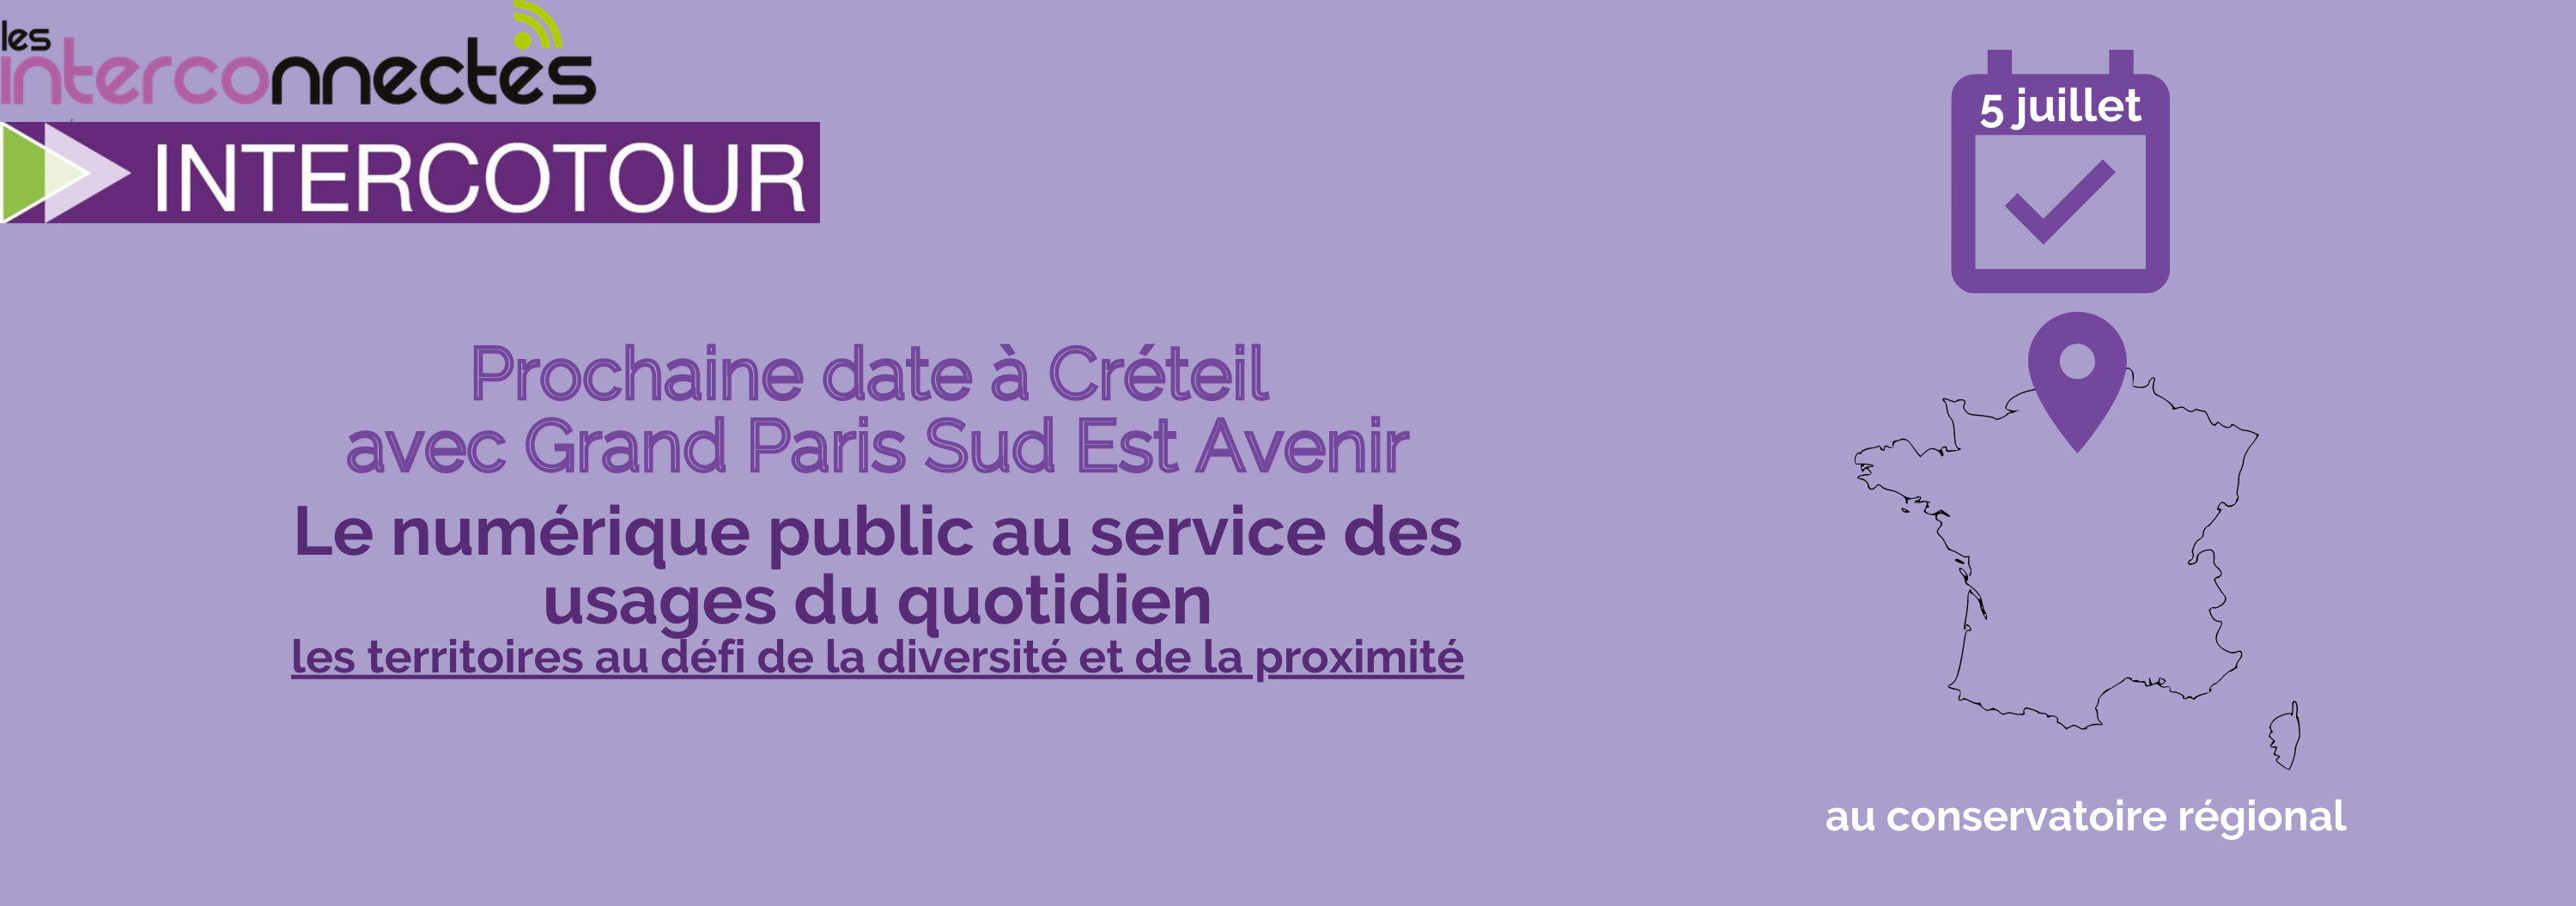 IntercoTour Ile de France le 5 juillet : numérique public entre proximité et diversité des territoires